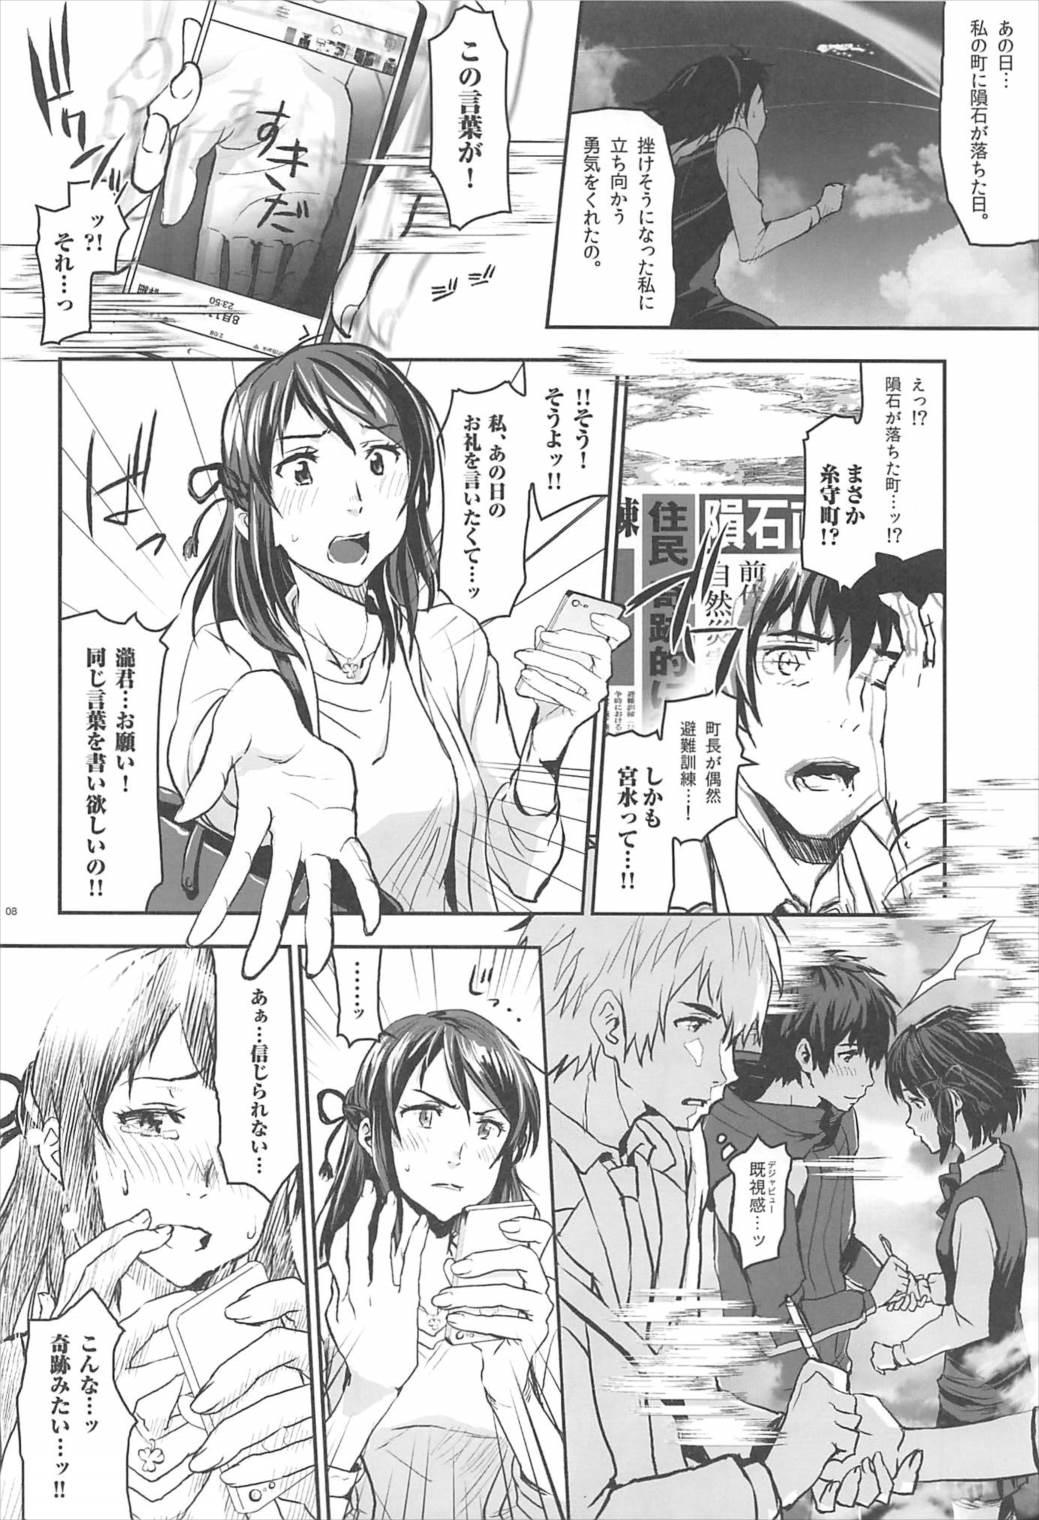 Para Kimi no Naka wa. - Kimi no na wa. Romance - Page 7